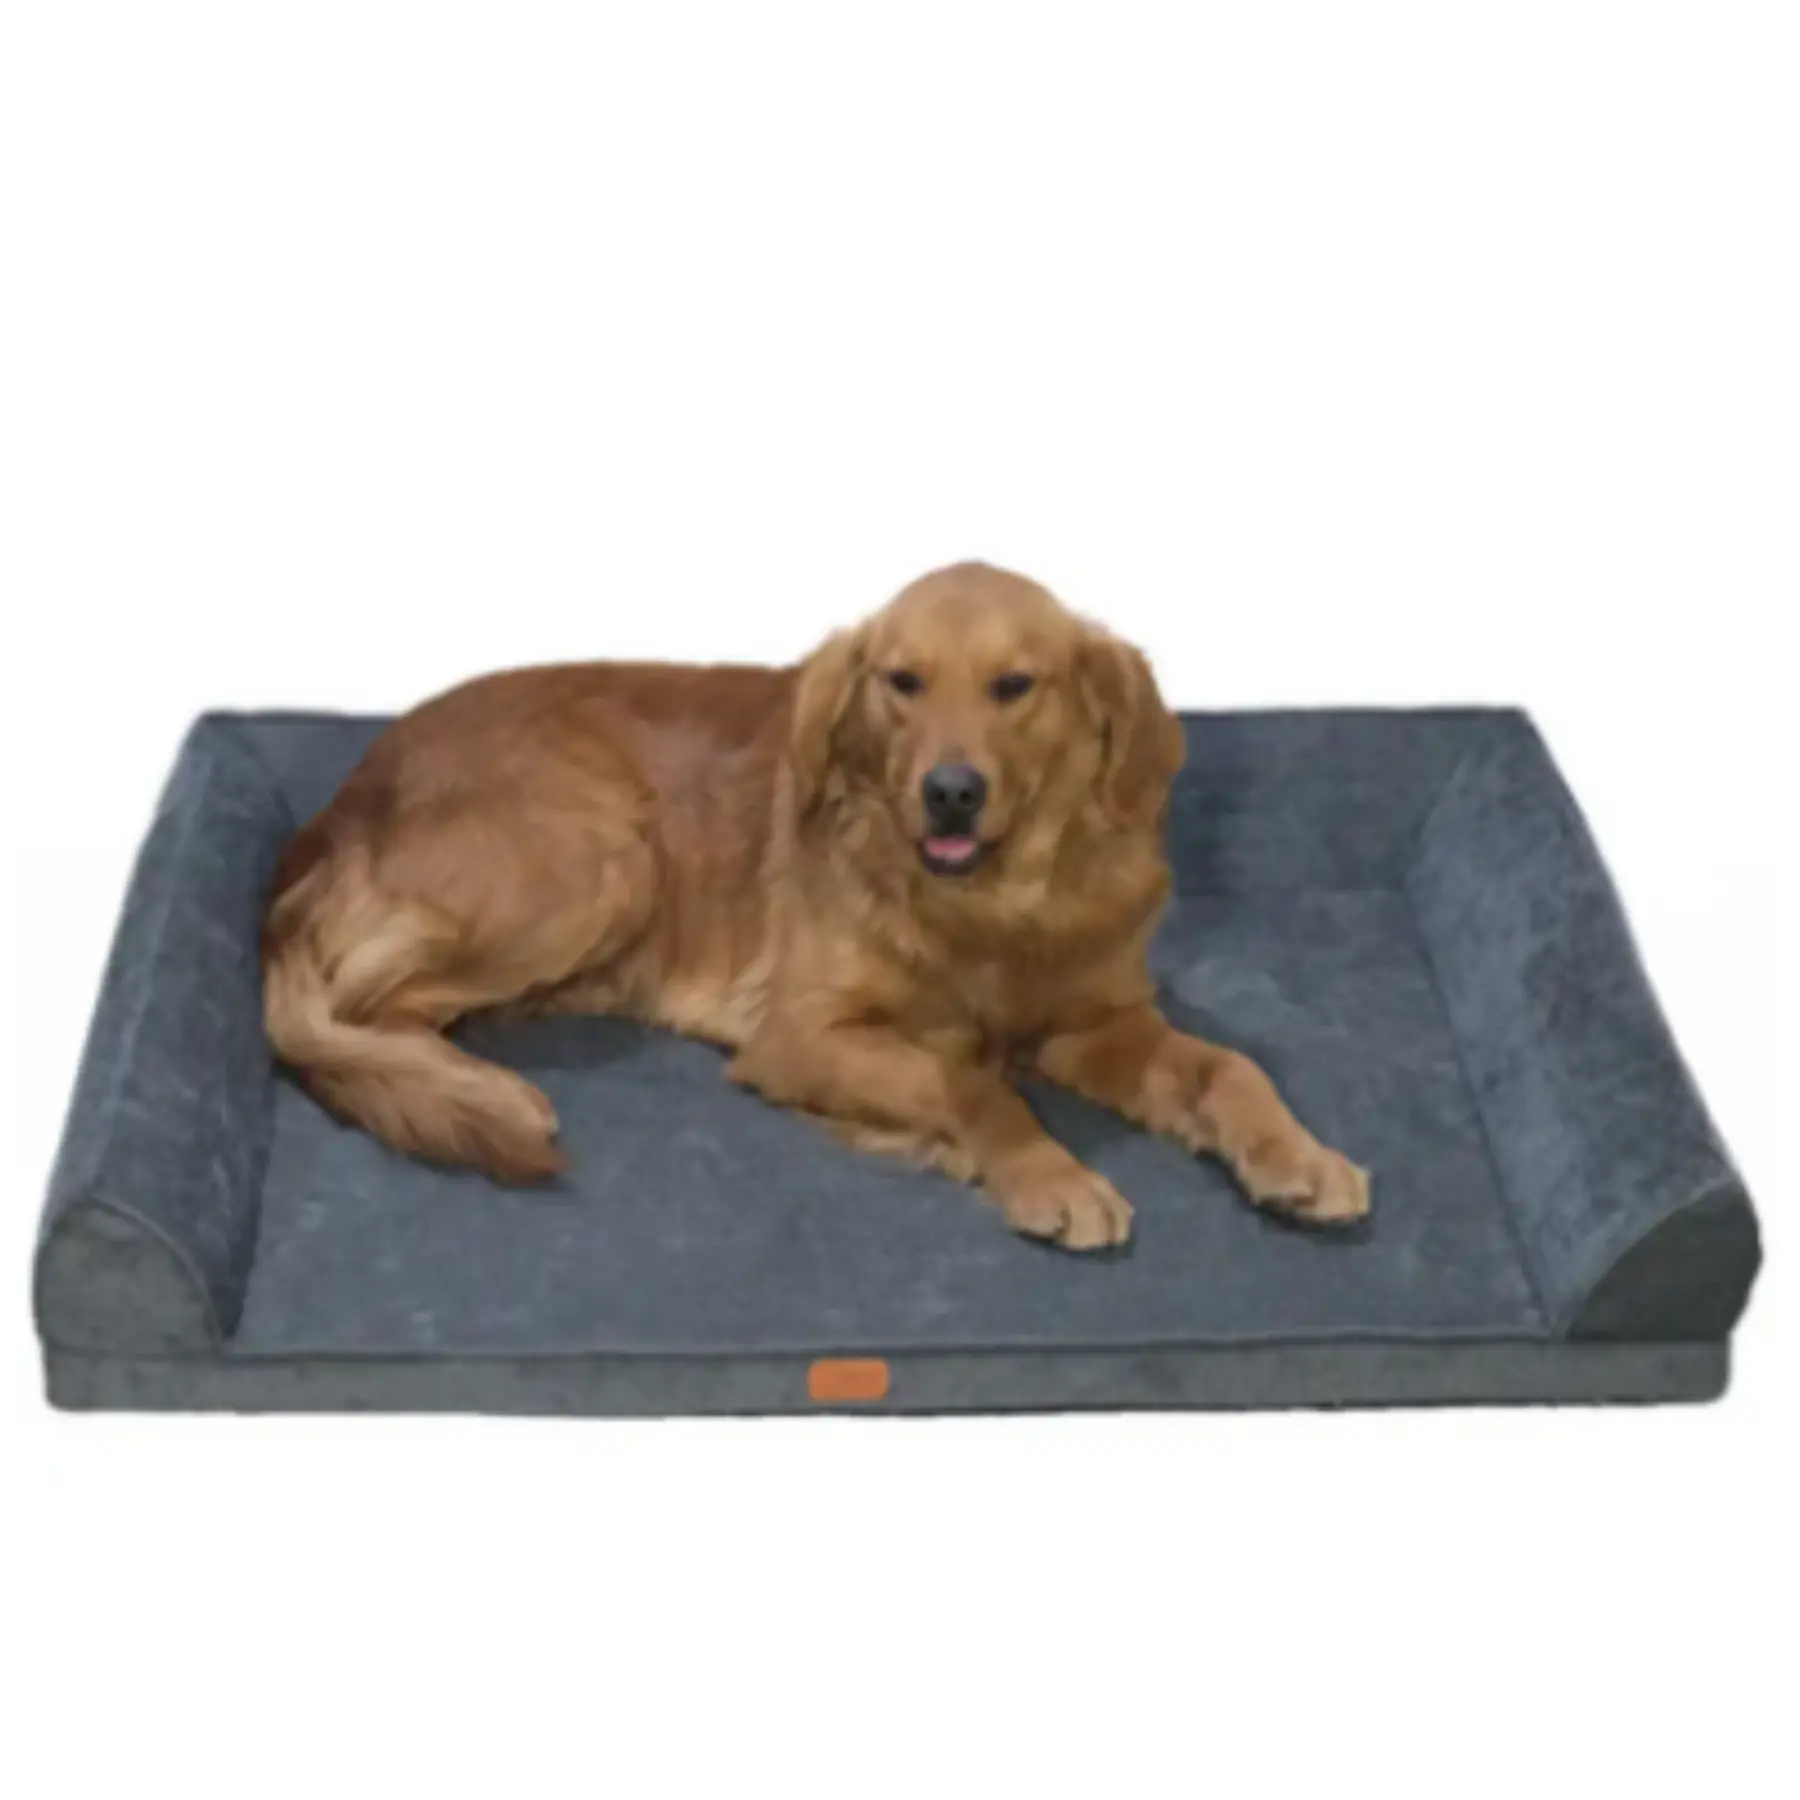 Gran oferta, cama para mascotas cómoda hecha a mano personalizada, cama para perros con relleno de algodón PP, muebles para casa para perros calientes, perrera para mascotas